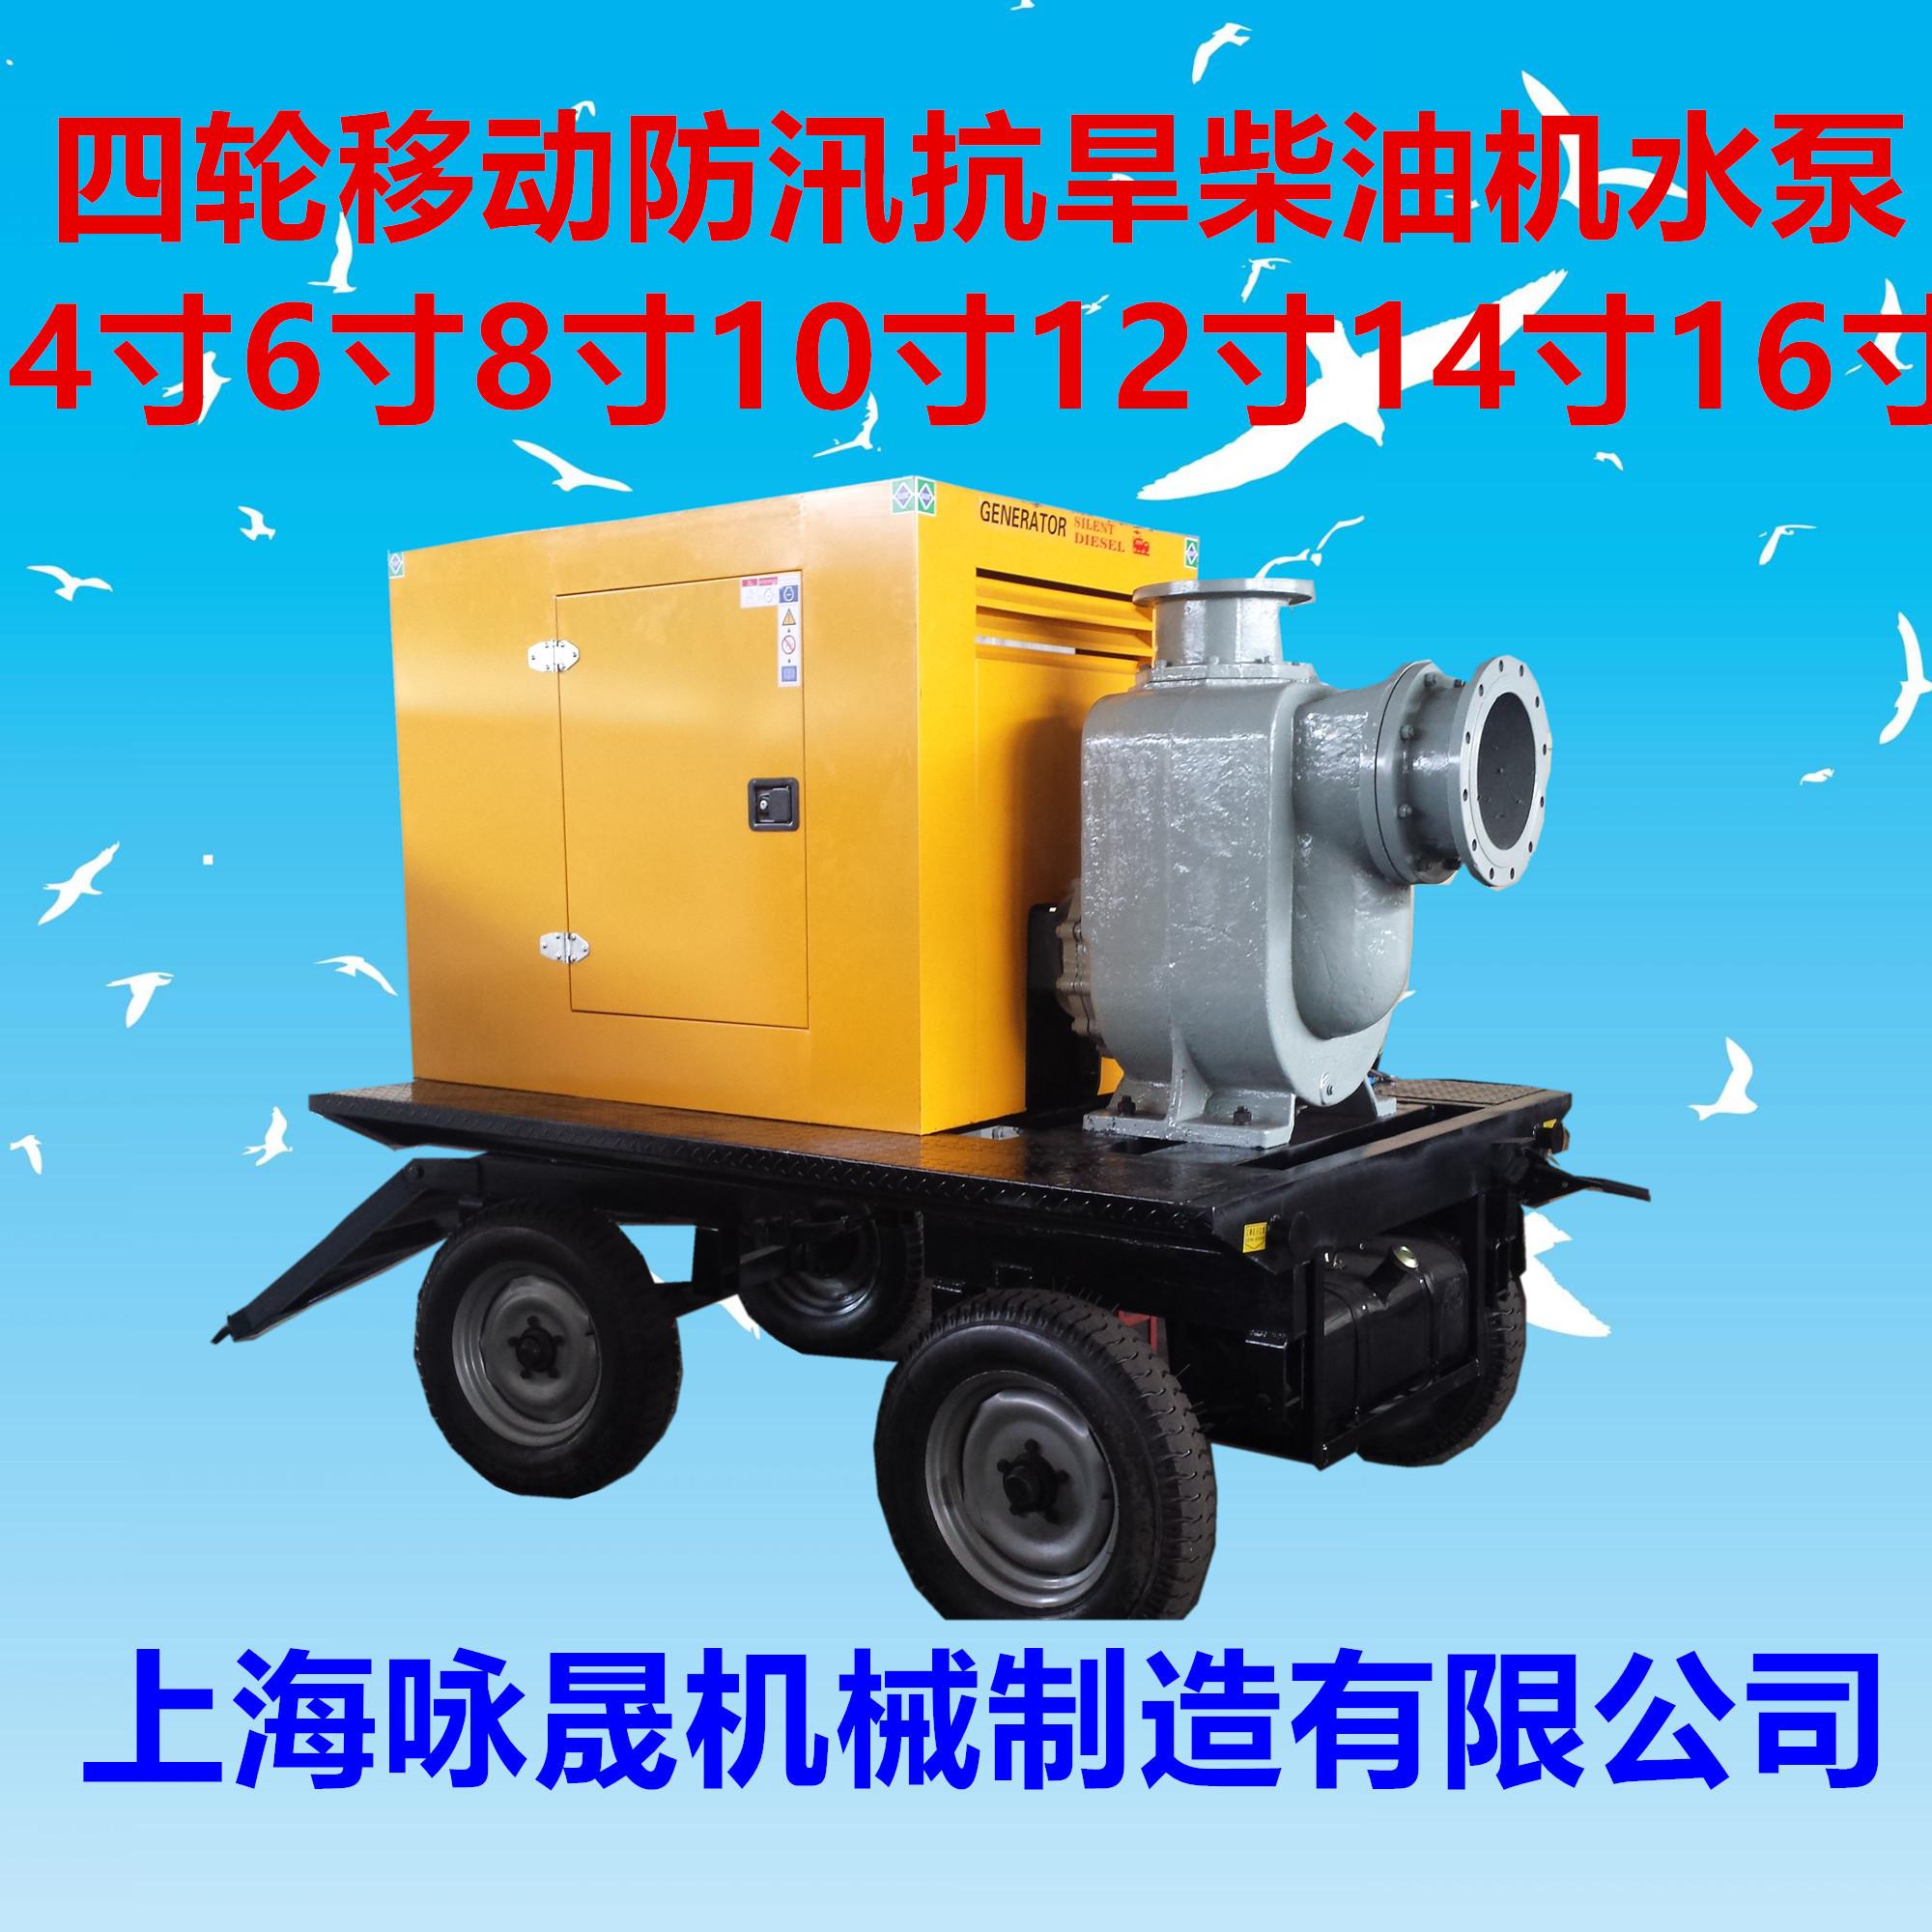 10寸柴油机水泵机组